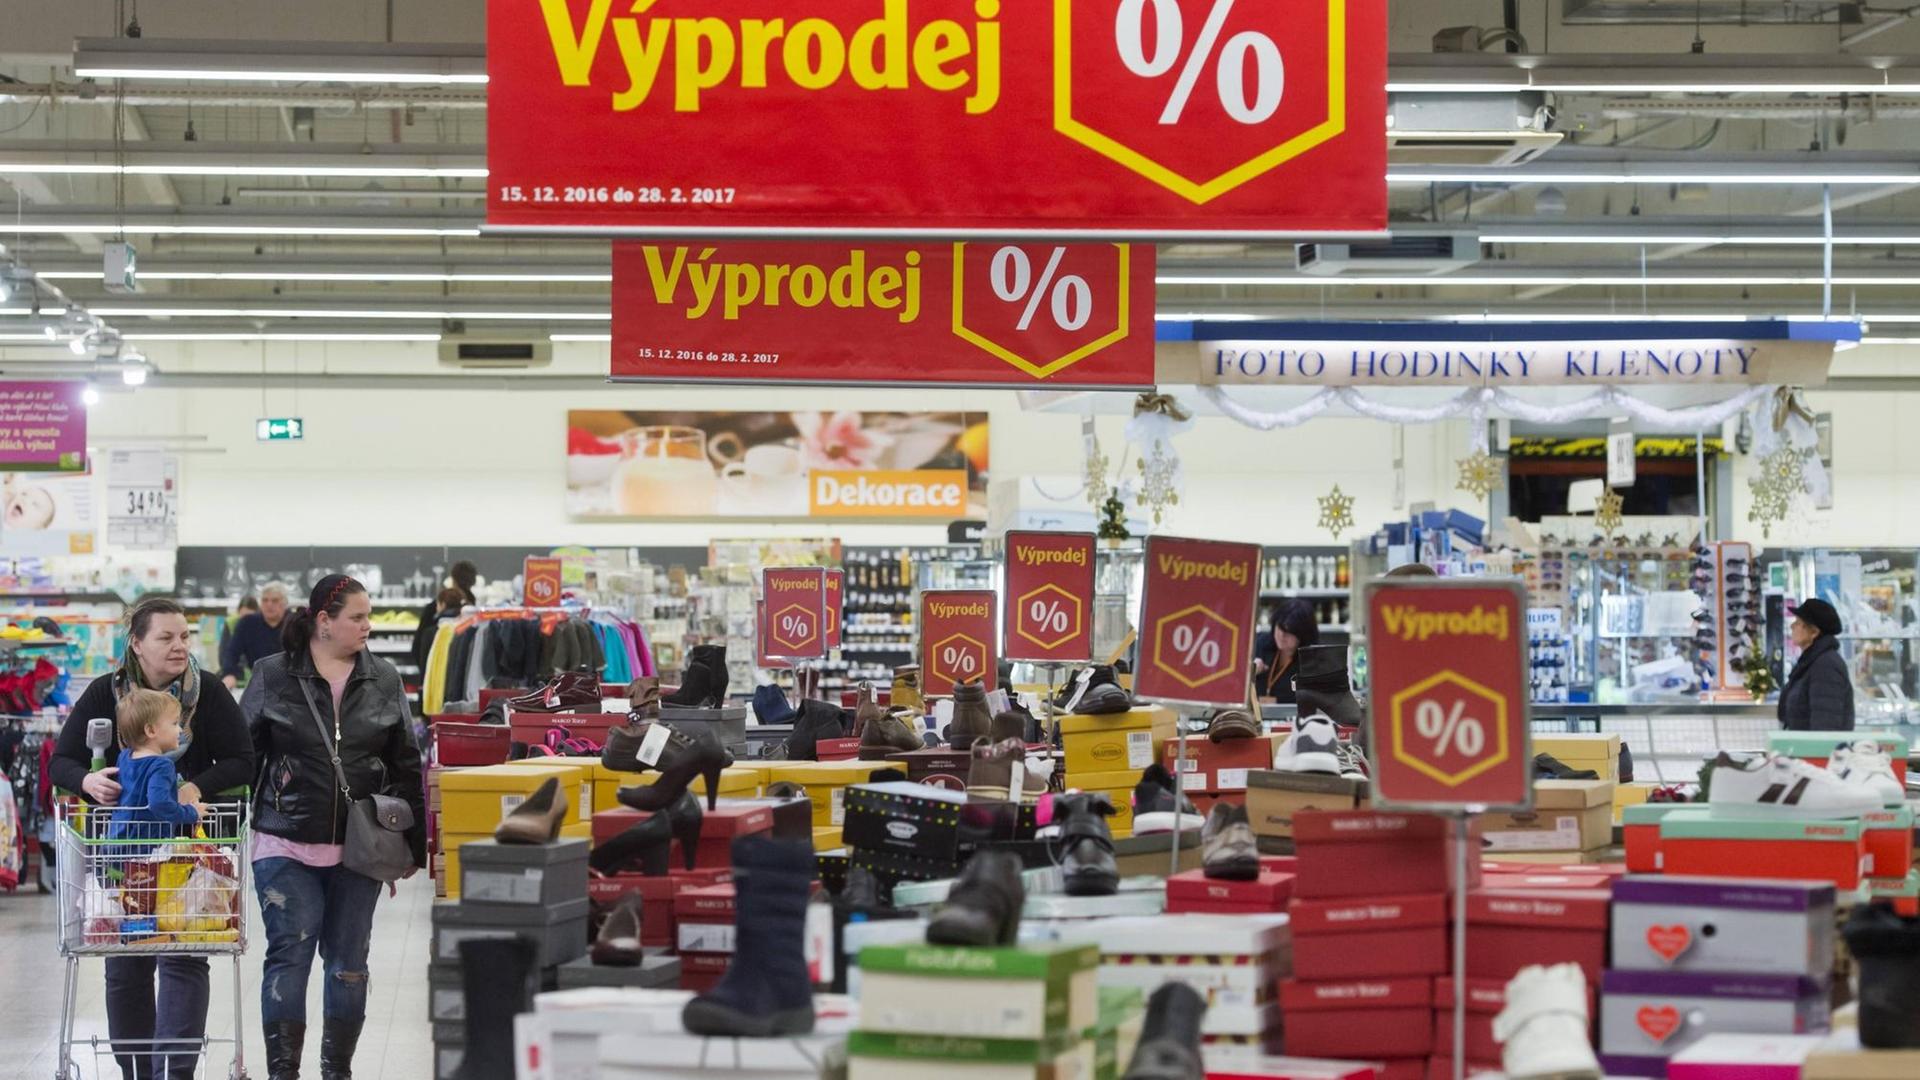 Große Schilder weisen in einem Supermarkt in Prag auf Sonderangebote hin.